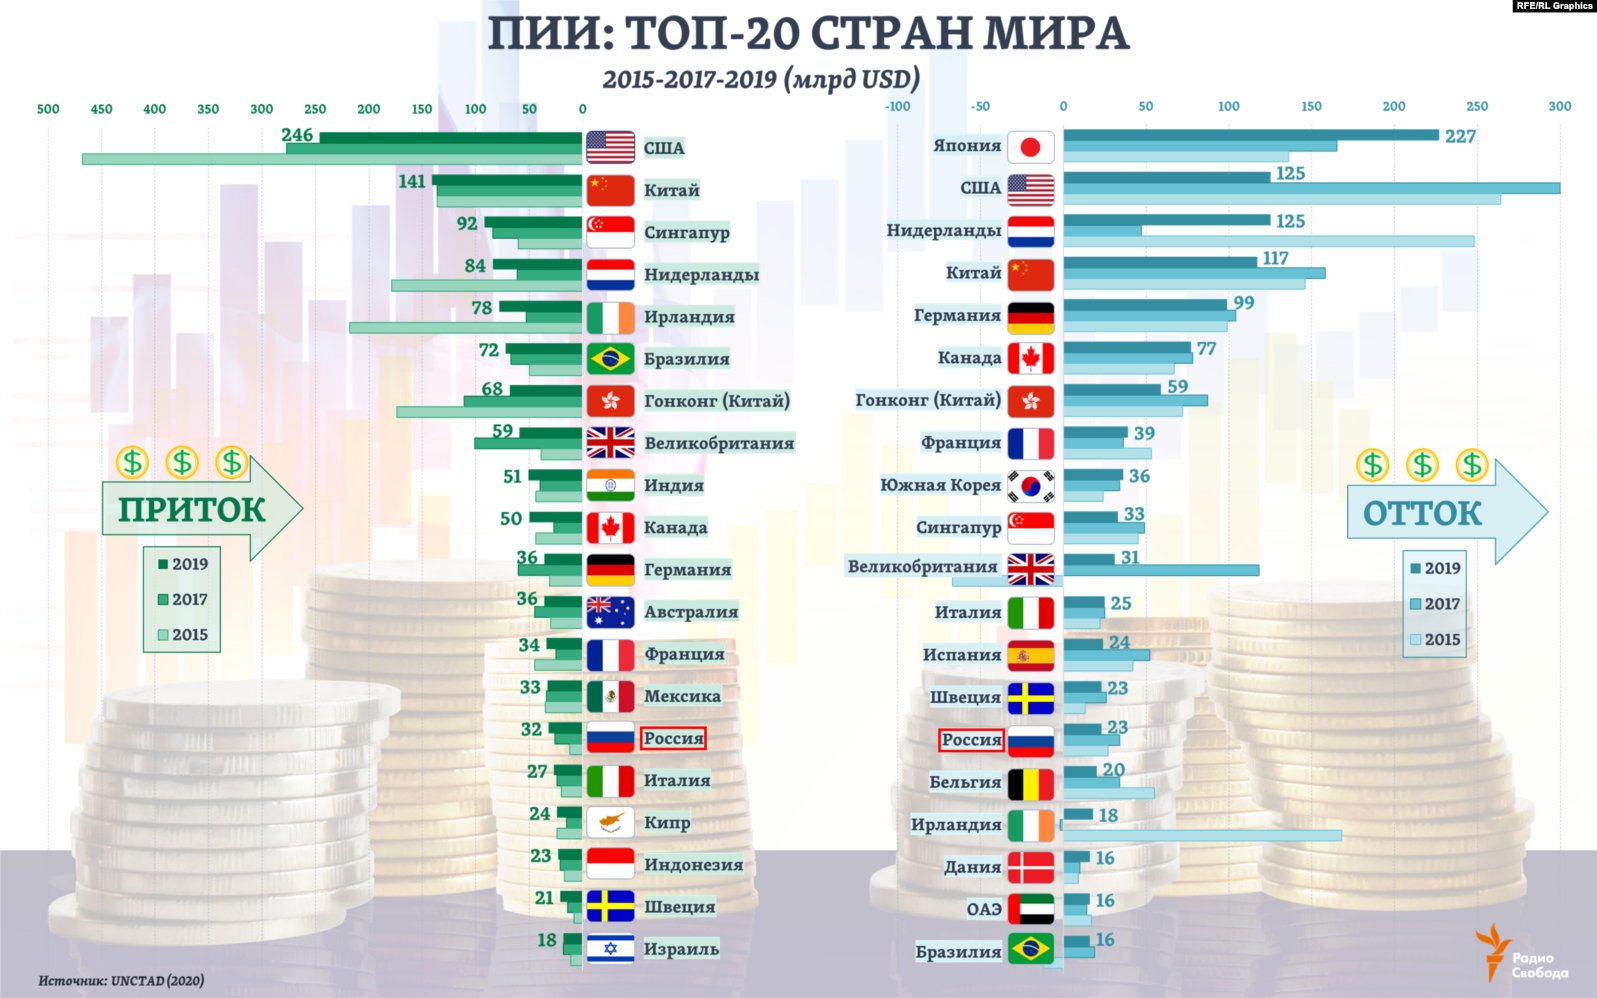 Все места которые занимает россия. Прямые иностранные инвестиции в мире. Прямые иностранные инвестиции (ПИИ) В Россию. Прямые иностранные инвестиции график 2020. Объем инвестиций по странам.